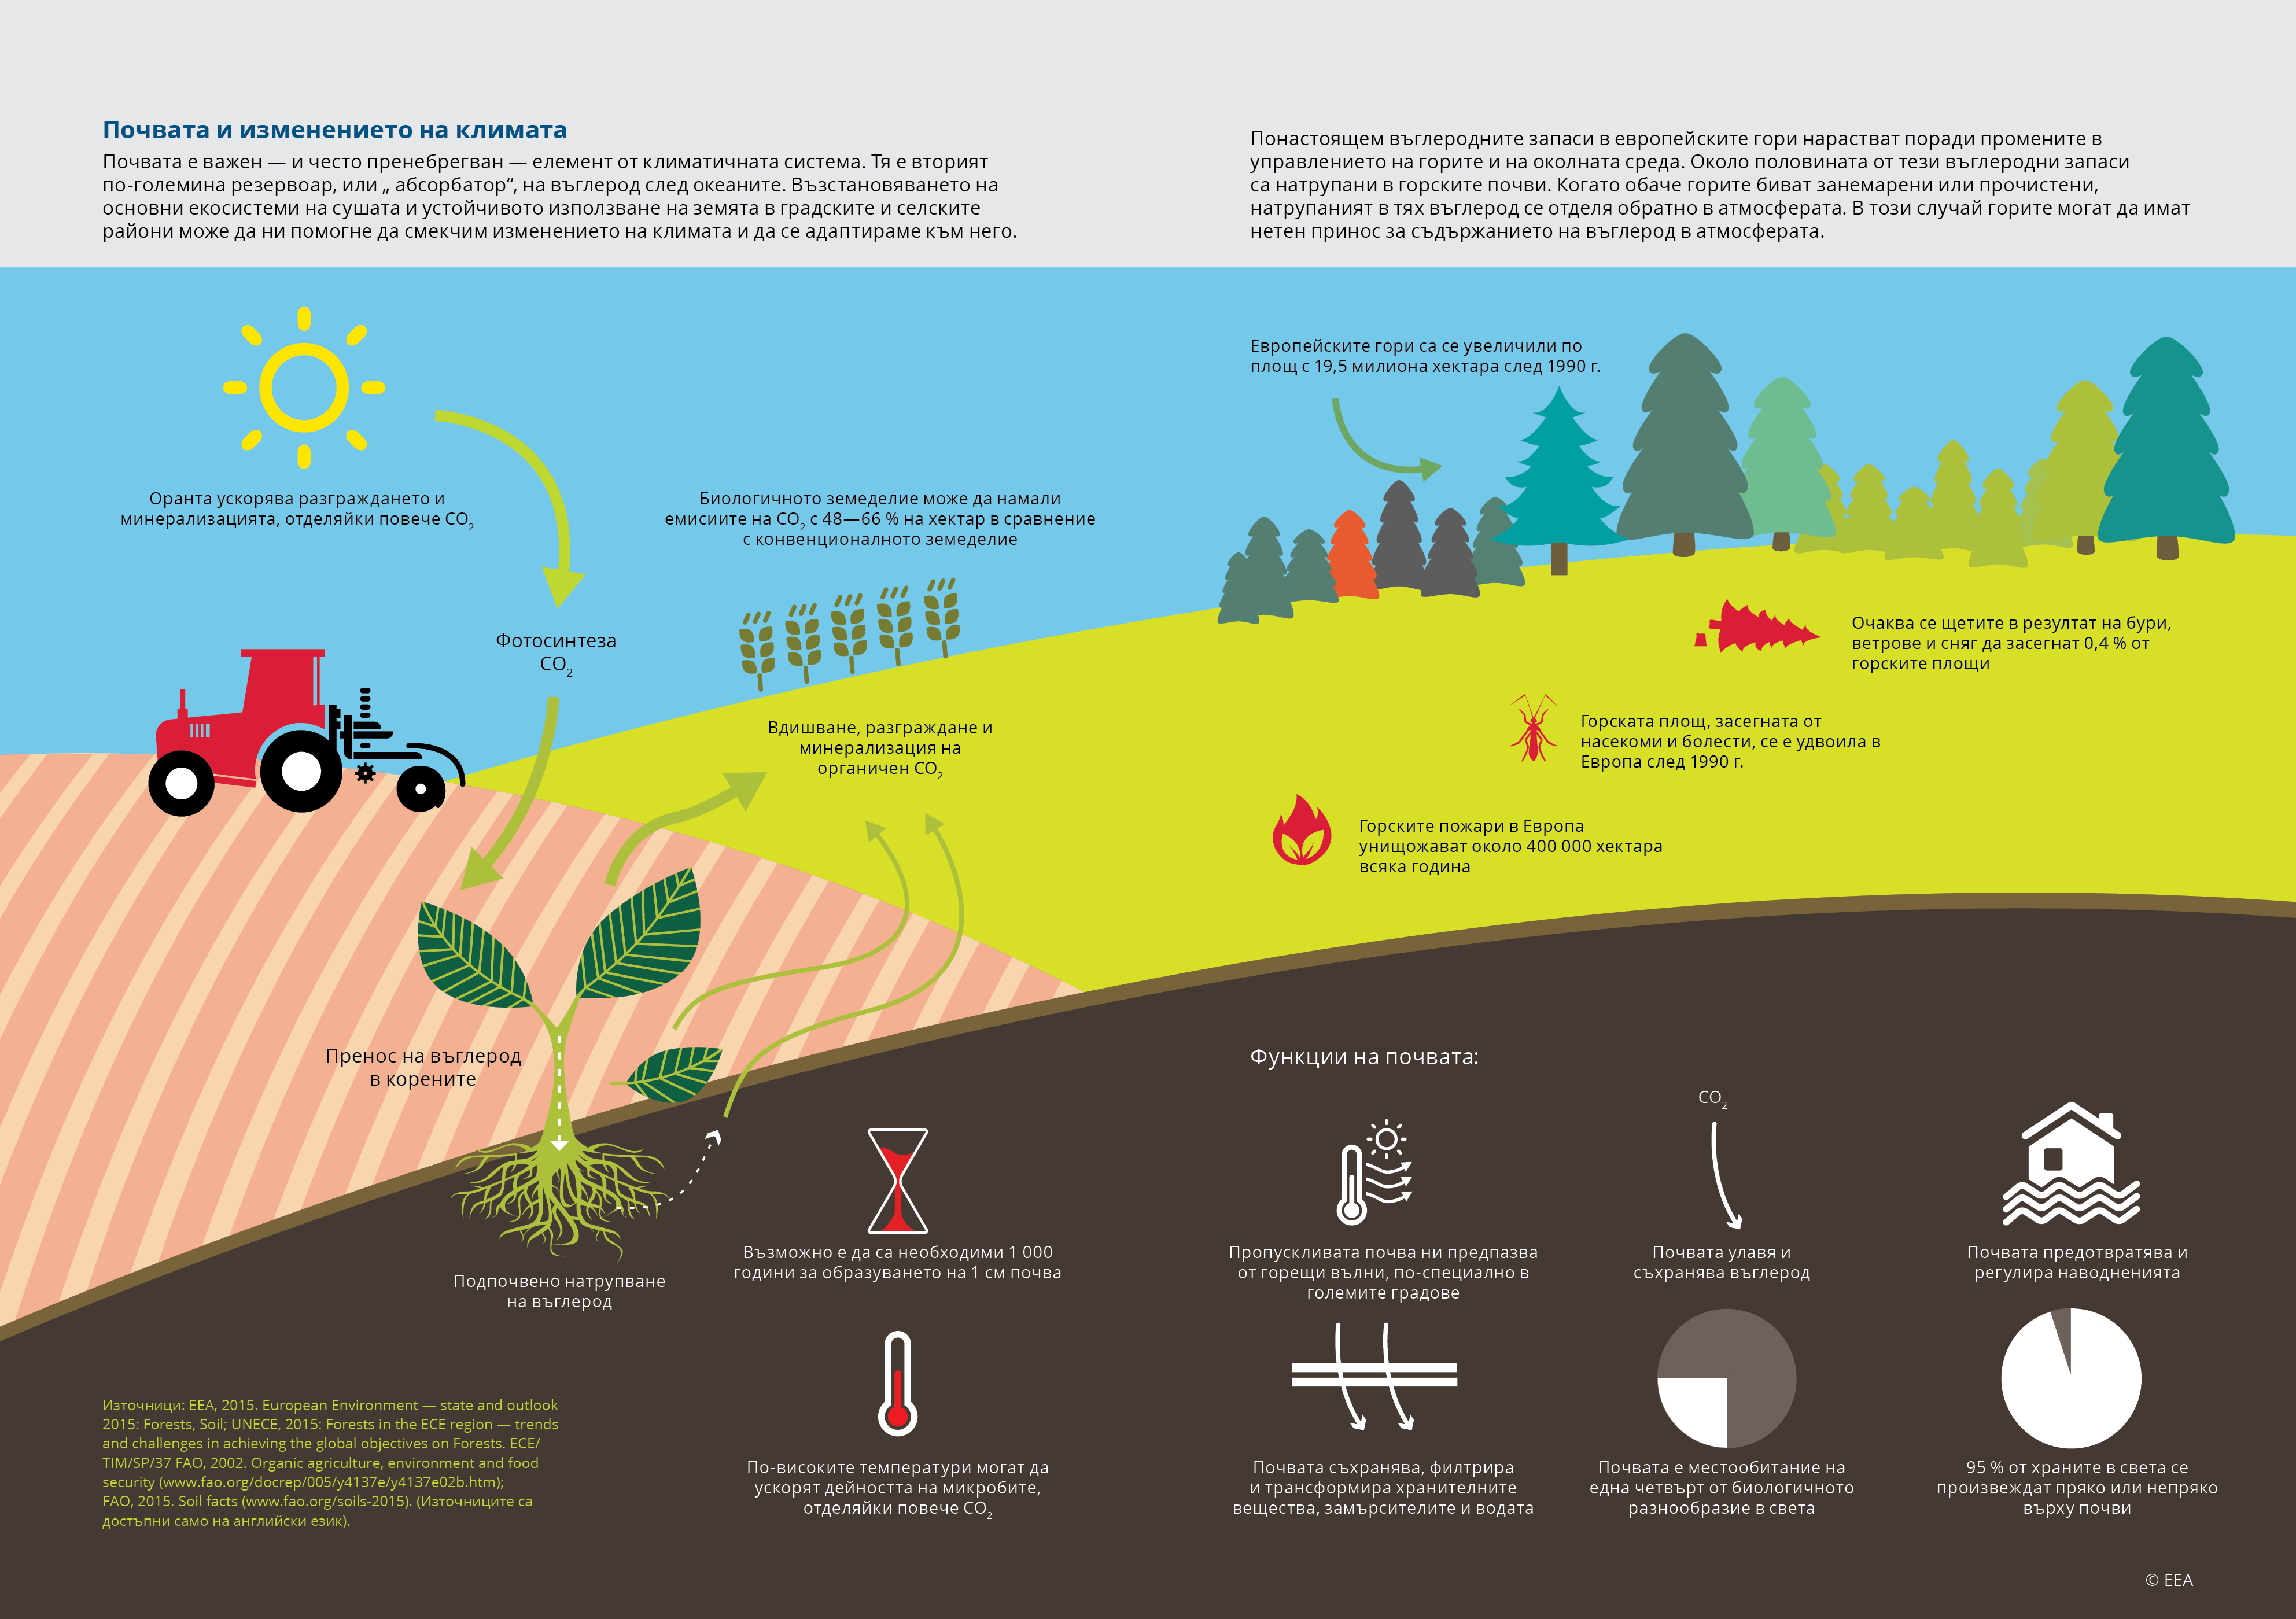 Почвата и изменението на климата